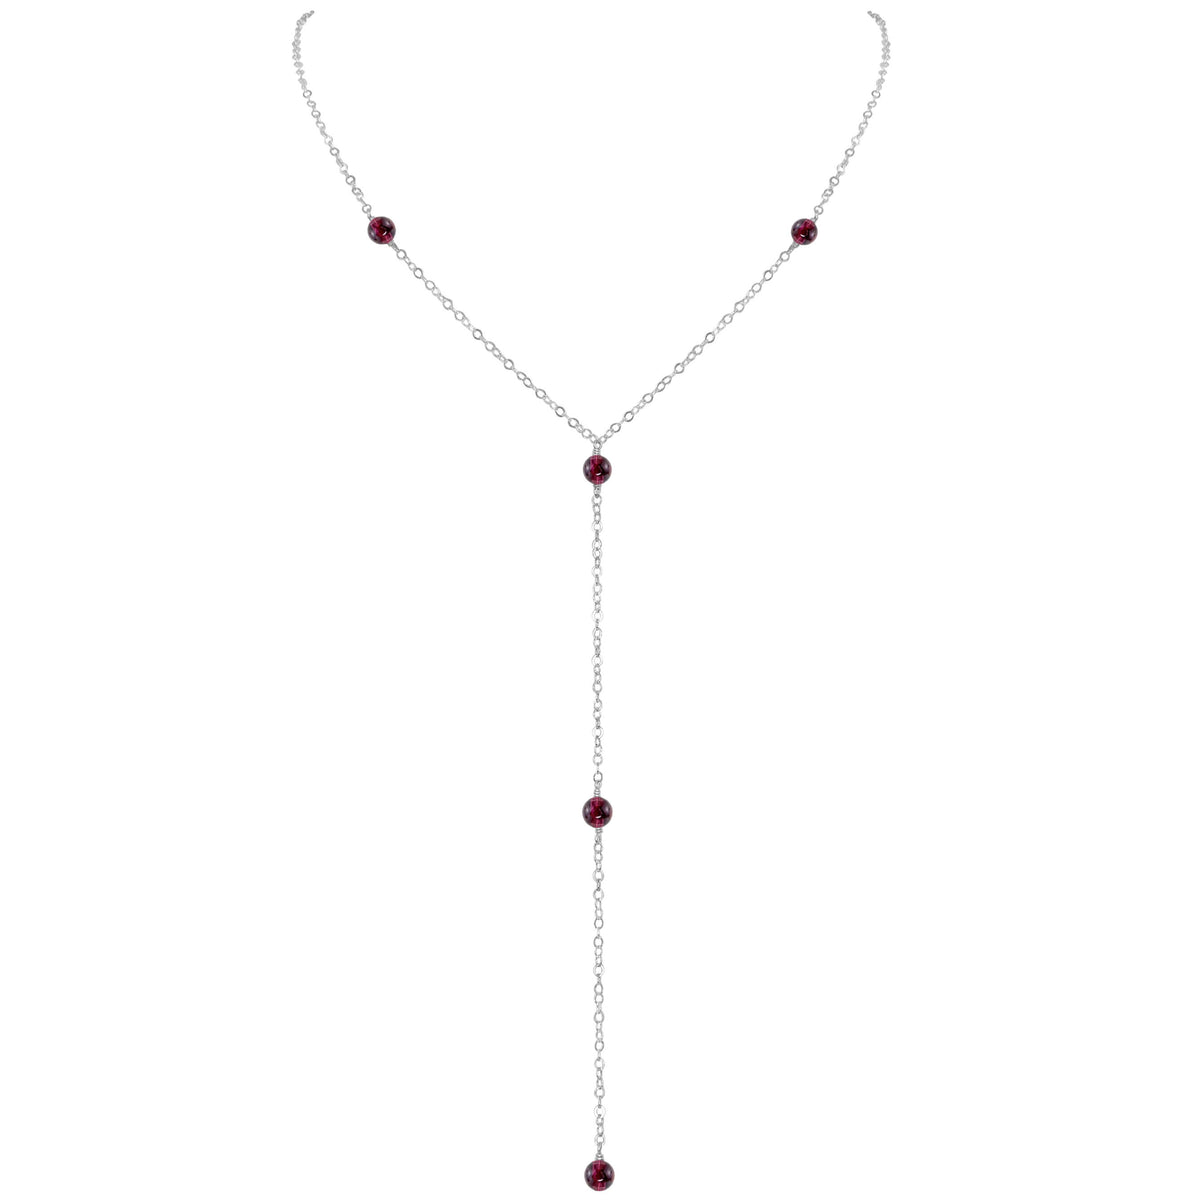 Dainty Y Necklace - Garnet - Sterling Silver - Luna Tide Handmade Jewellery